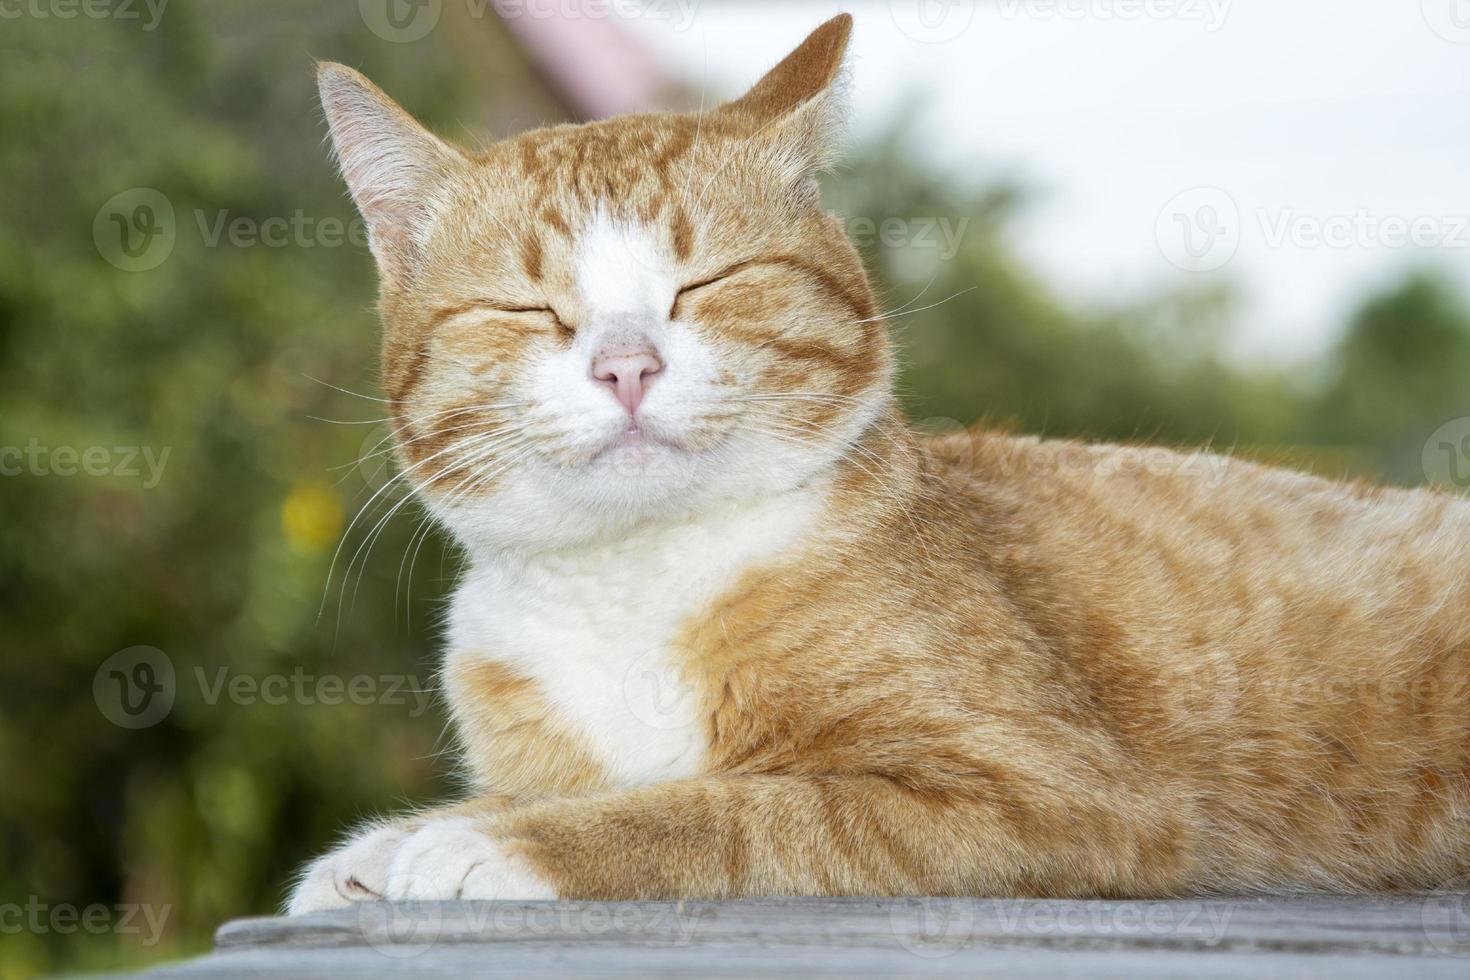 ingefära kattunge på nära håll. porträtt av en söt tabby katt närbild liggande foto